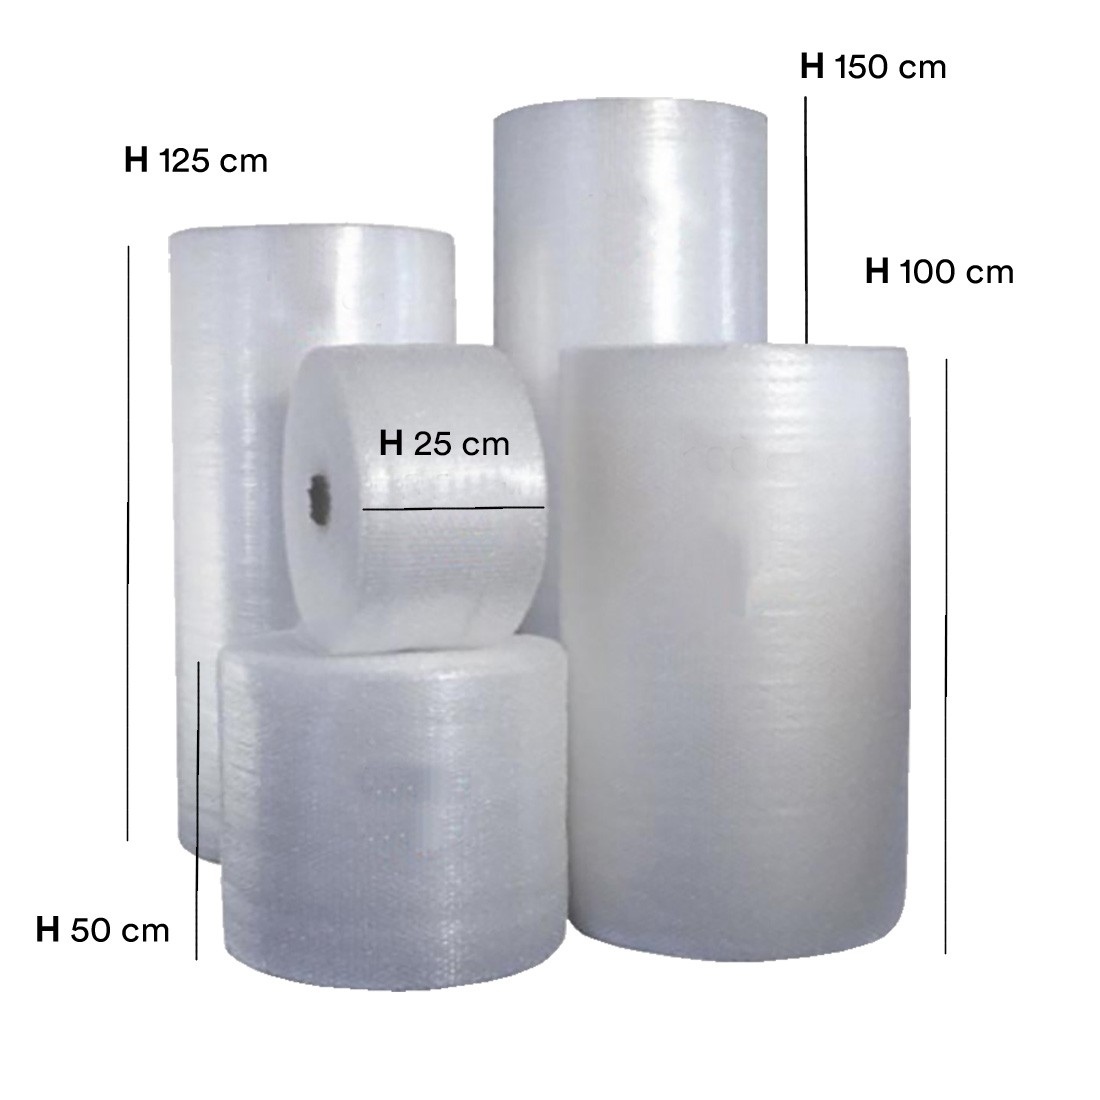 VERDELOOK Imballaggio pluriball alto 100 cm, rotolo con bolle d'aria  pellicola, bianco, per la protezione della merce